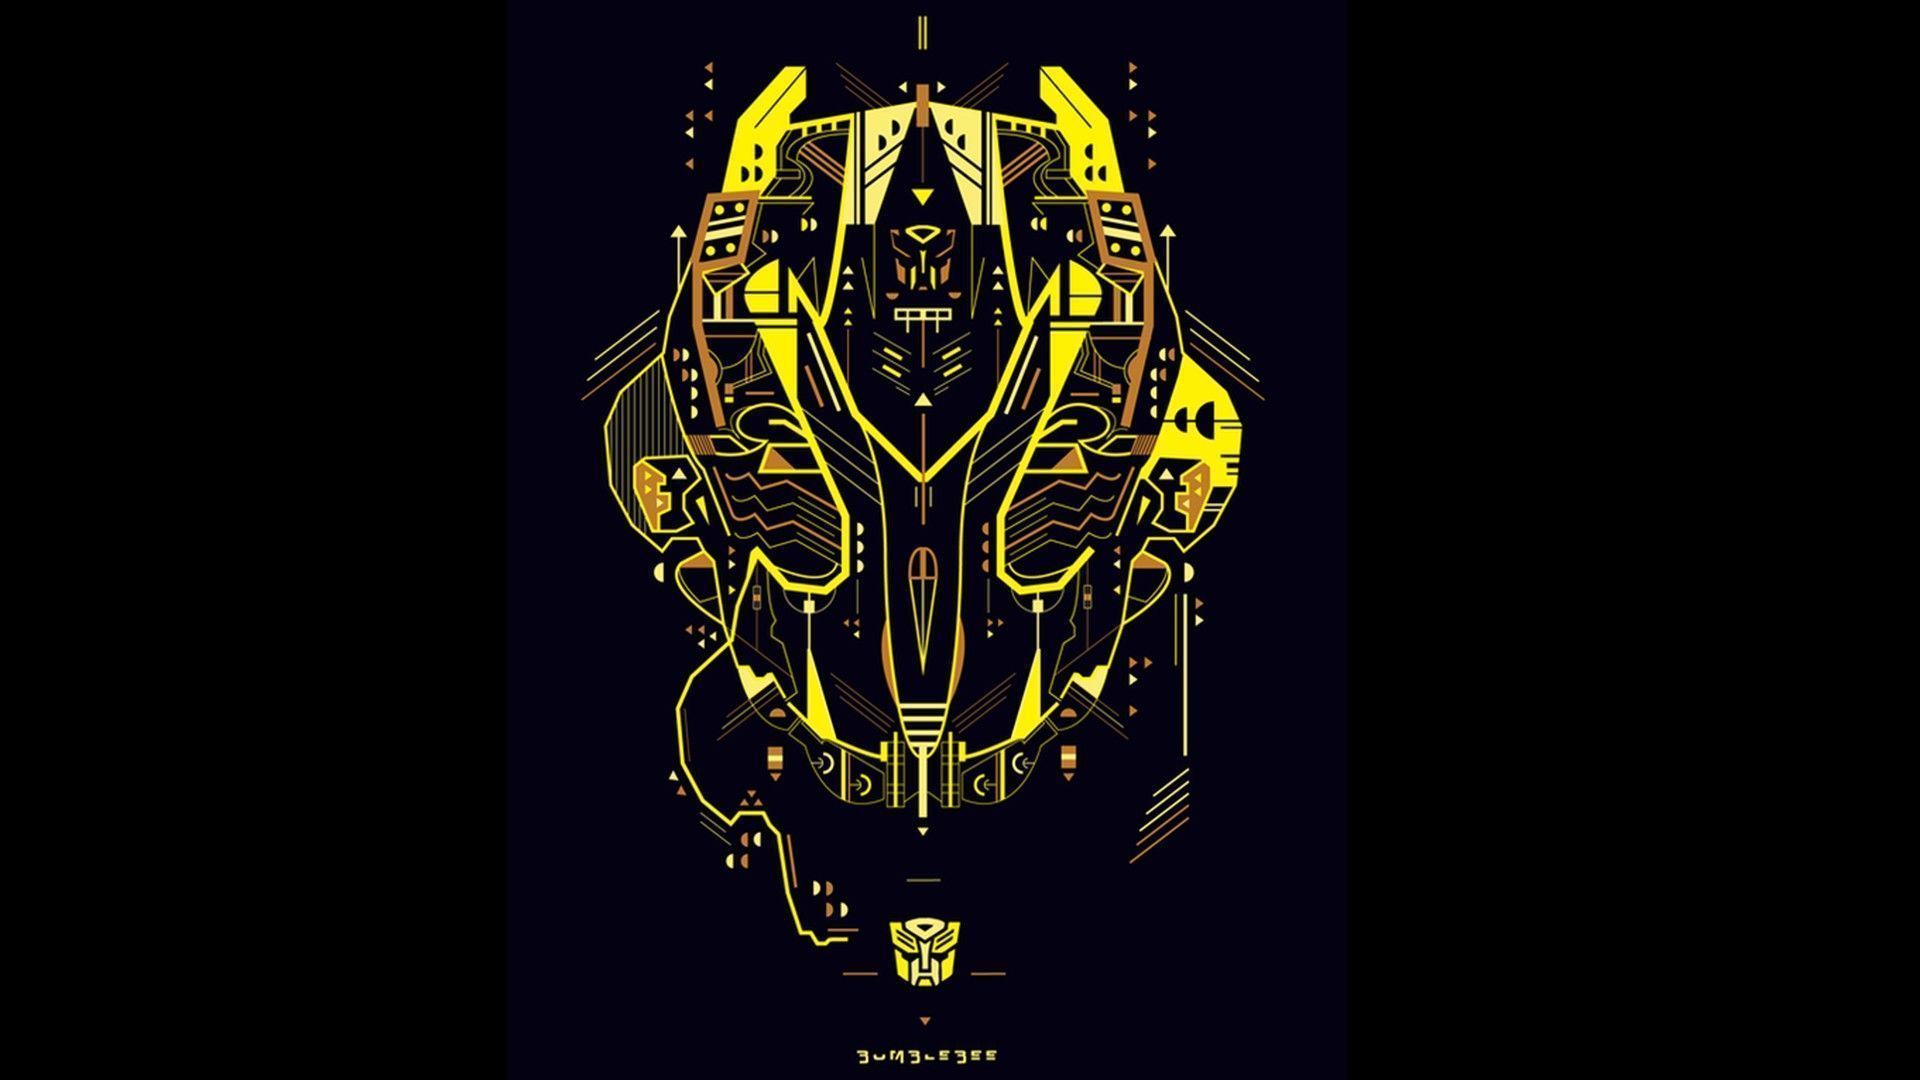 Transformers HD Wallpaper | 1920x1080 | ID:35307